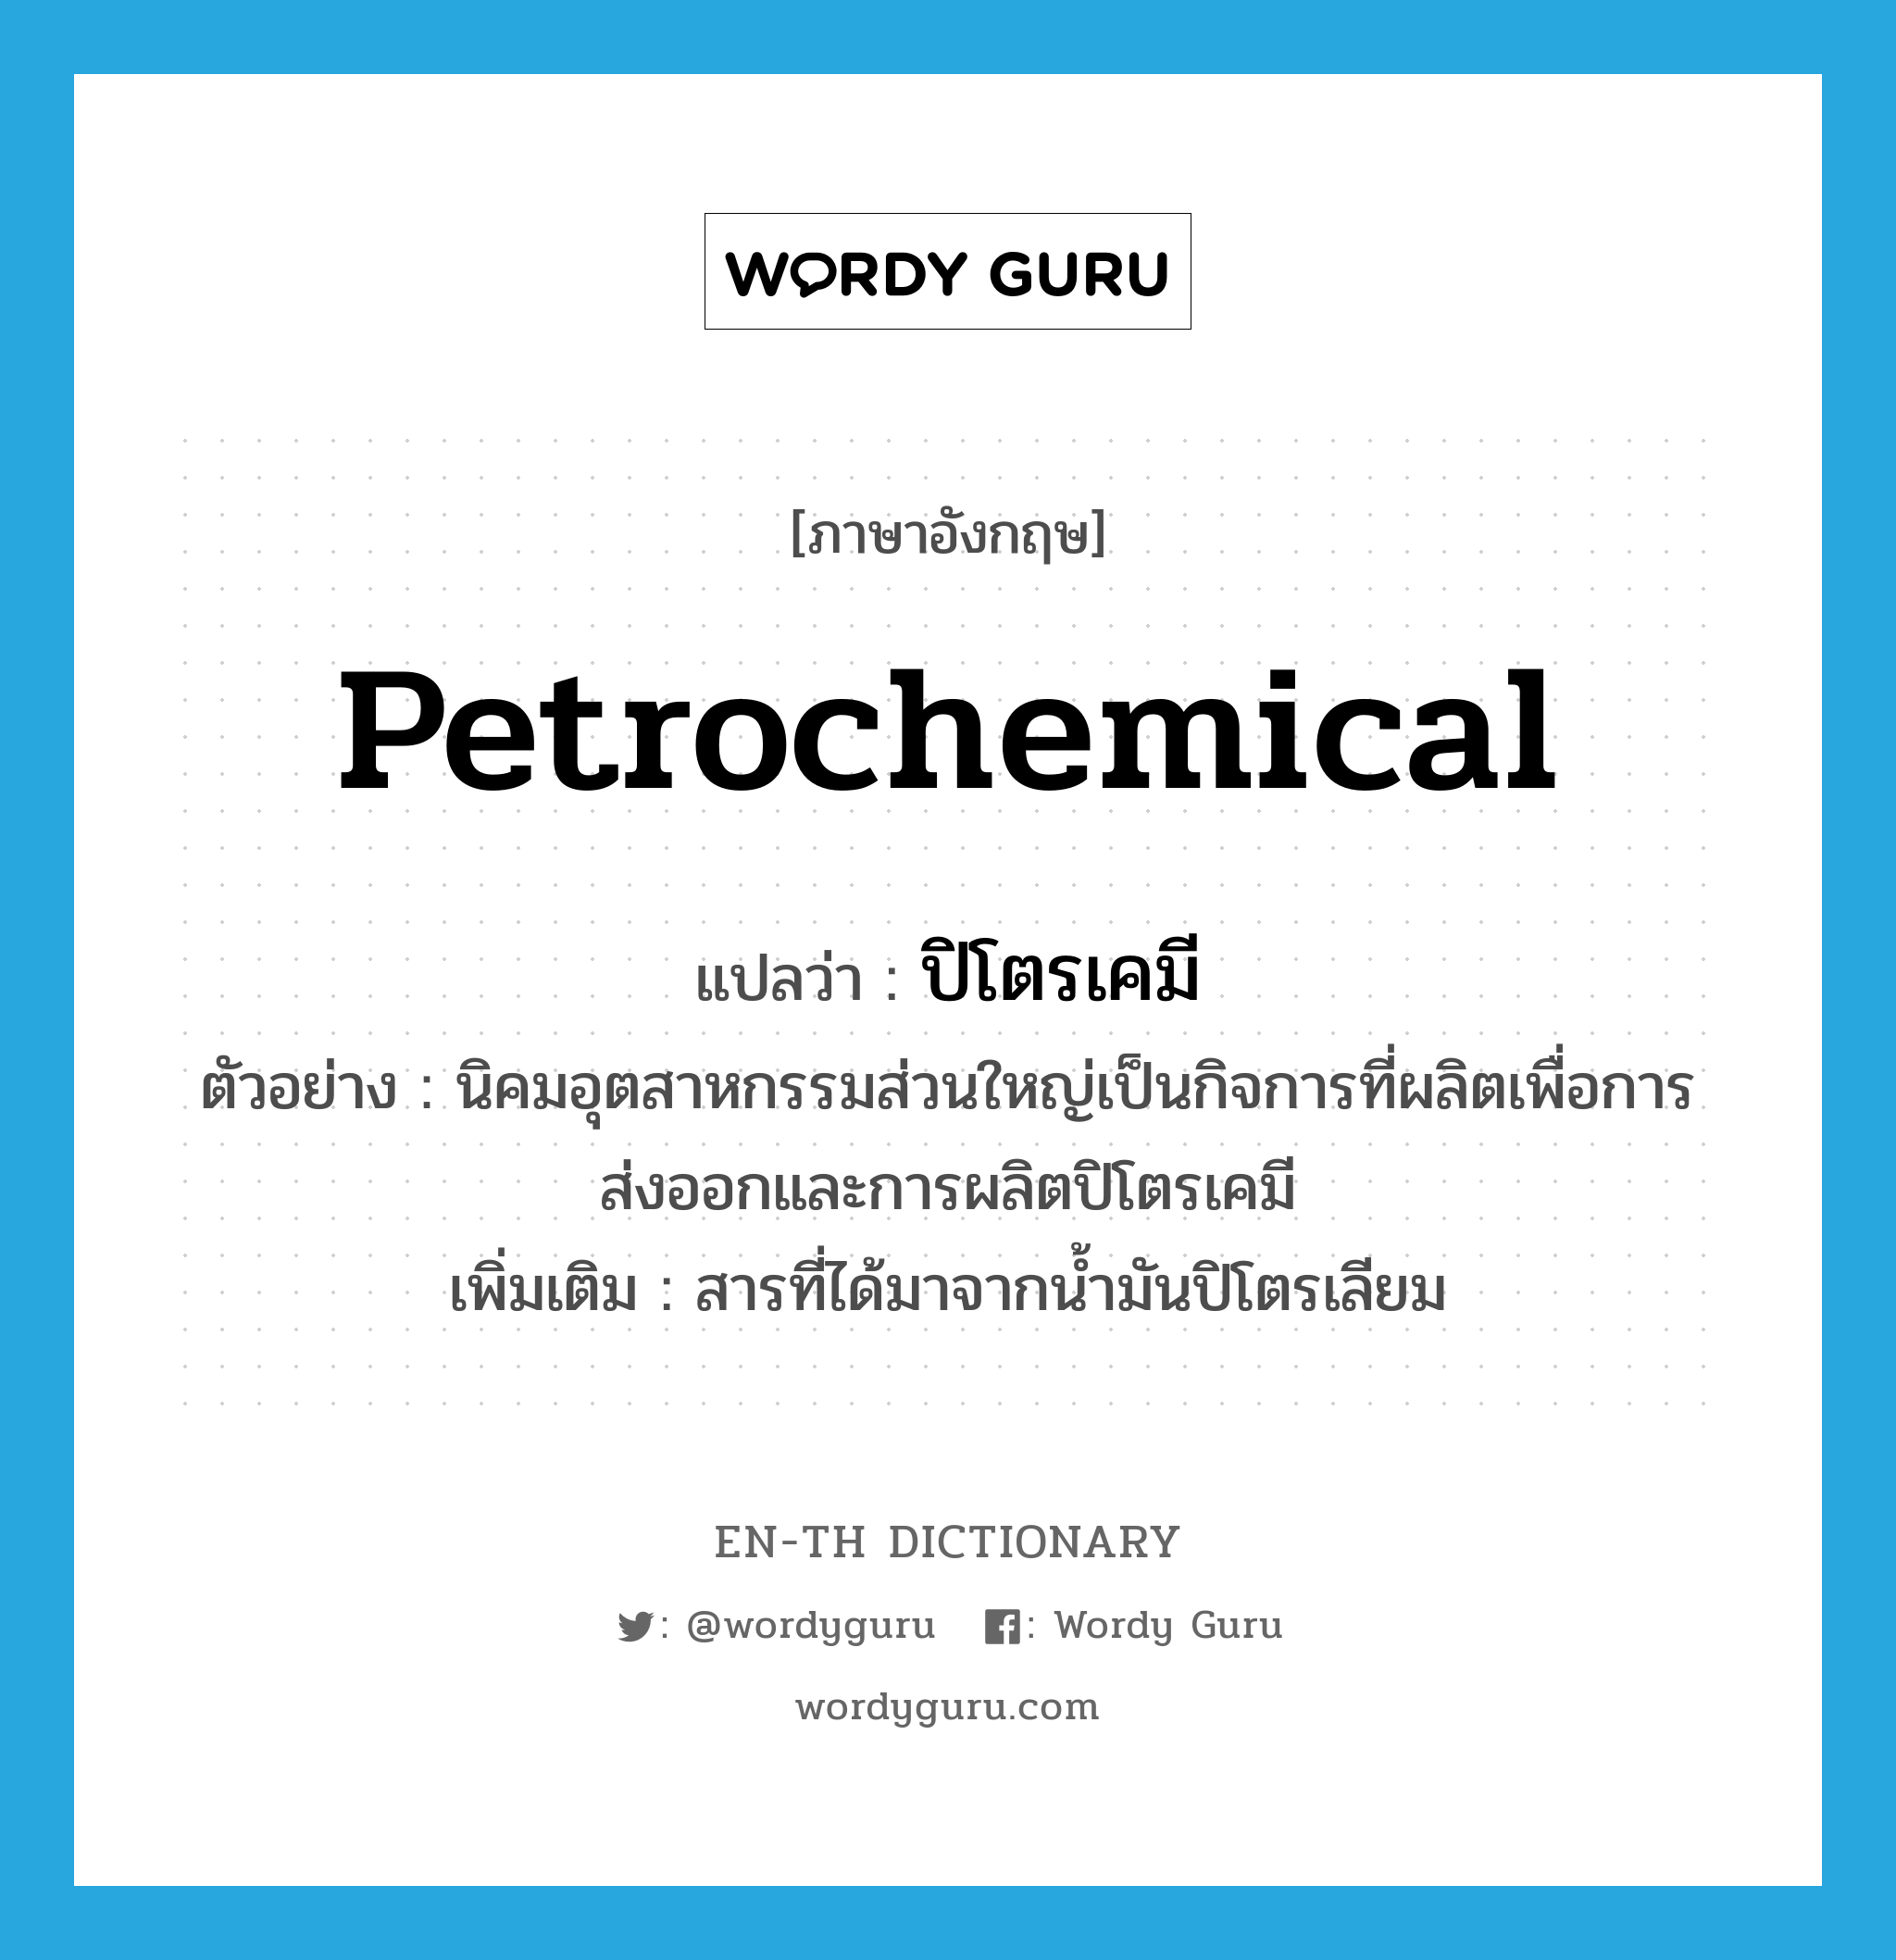 ปิโตรเคมี ภาษาอังกฤษ?, คำศัพท์ภาษาอังกฤษ ปิโตรเคมี แปลว่า petrochemical ประเภท N ตัวอย่าง นิคมอุตสาหกรรมส่วนใหญ่เป็นกิจการที่ผลิตเพื่อการส่งออกและการผลิตปิโตรเคมี เพิ่มเติม สารที่ได้มาจากน้ำมันปิโตรเลียม หมวด N